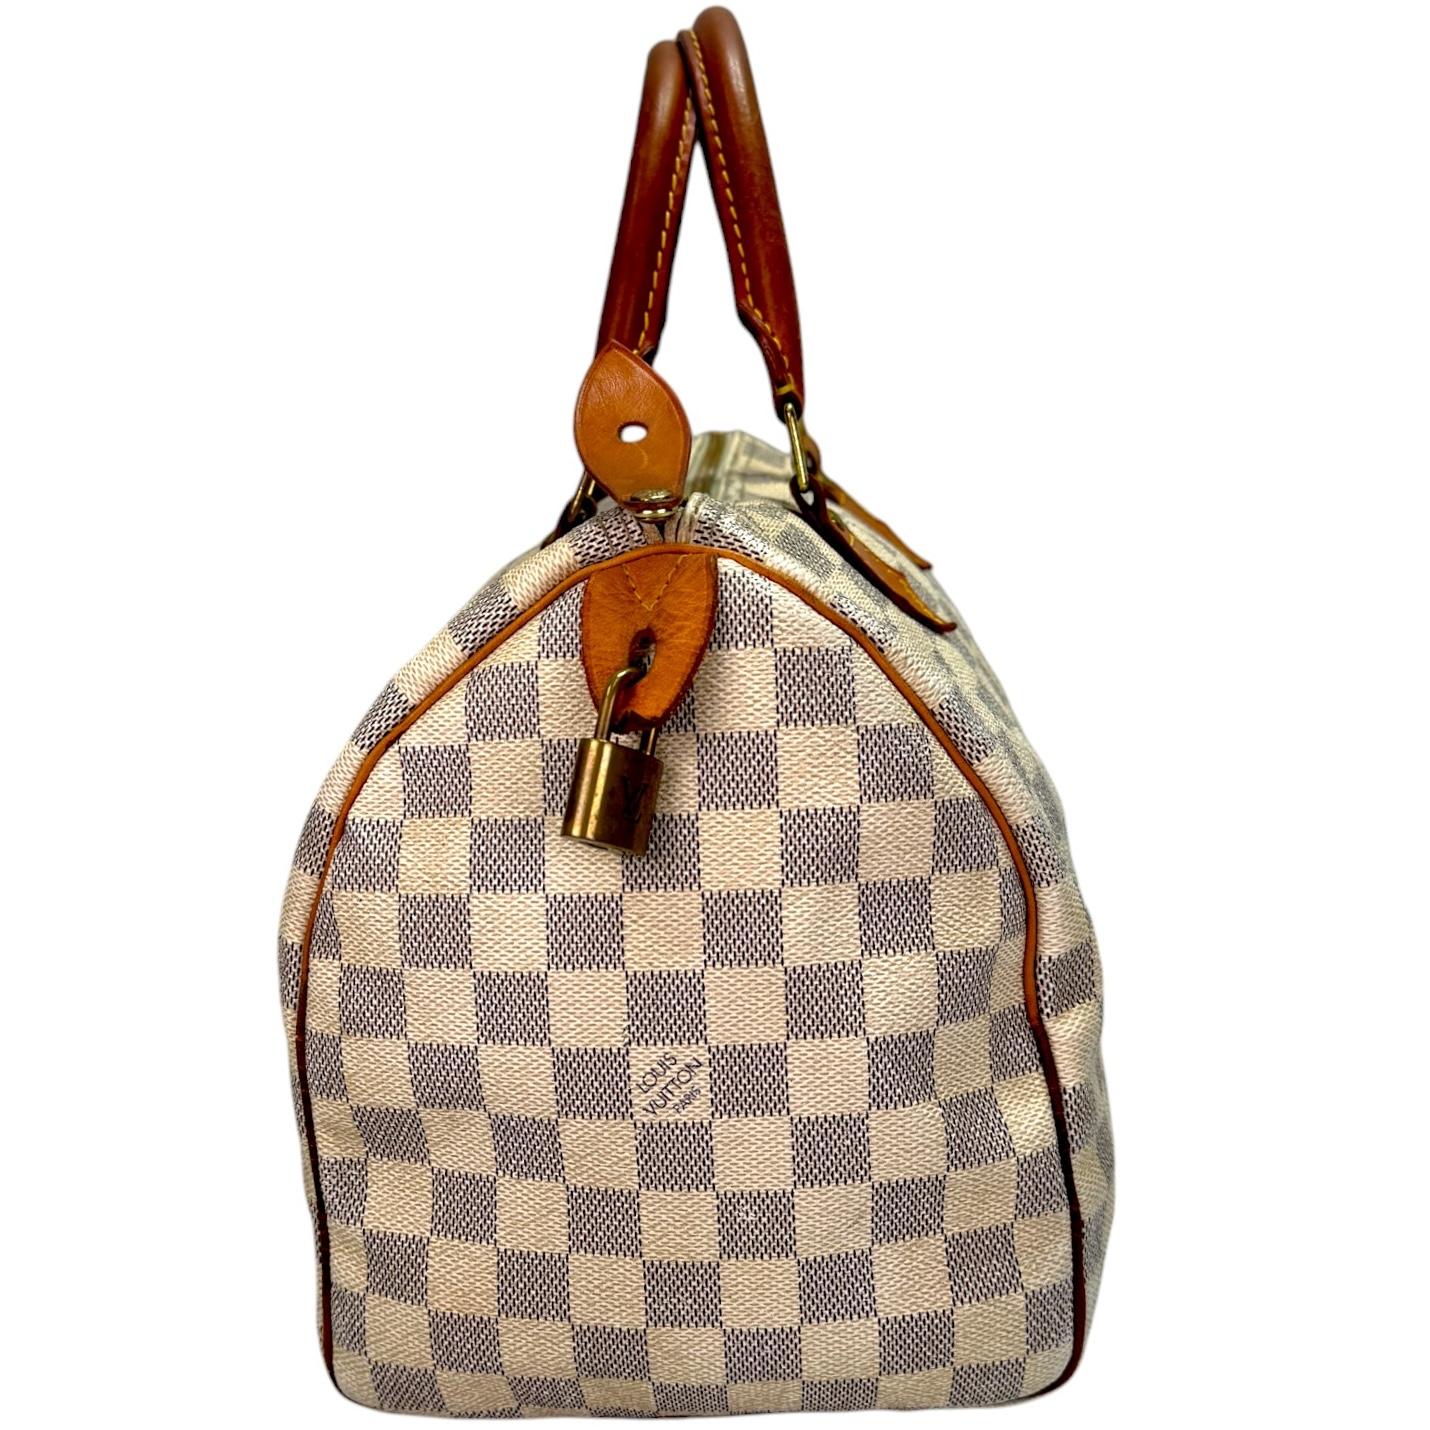 Authentic estate Louis Vuitton Speedy 30 Damier Azur bag